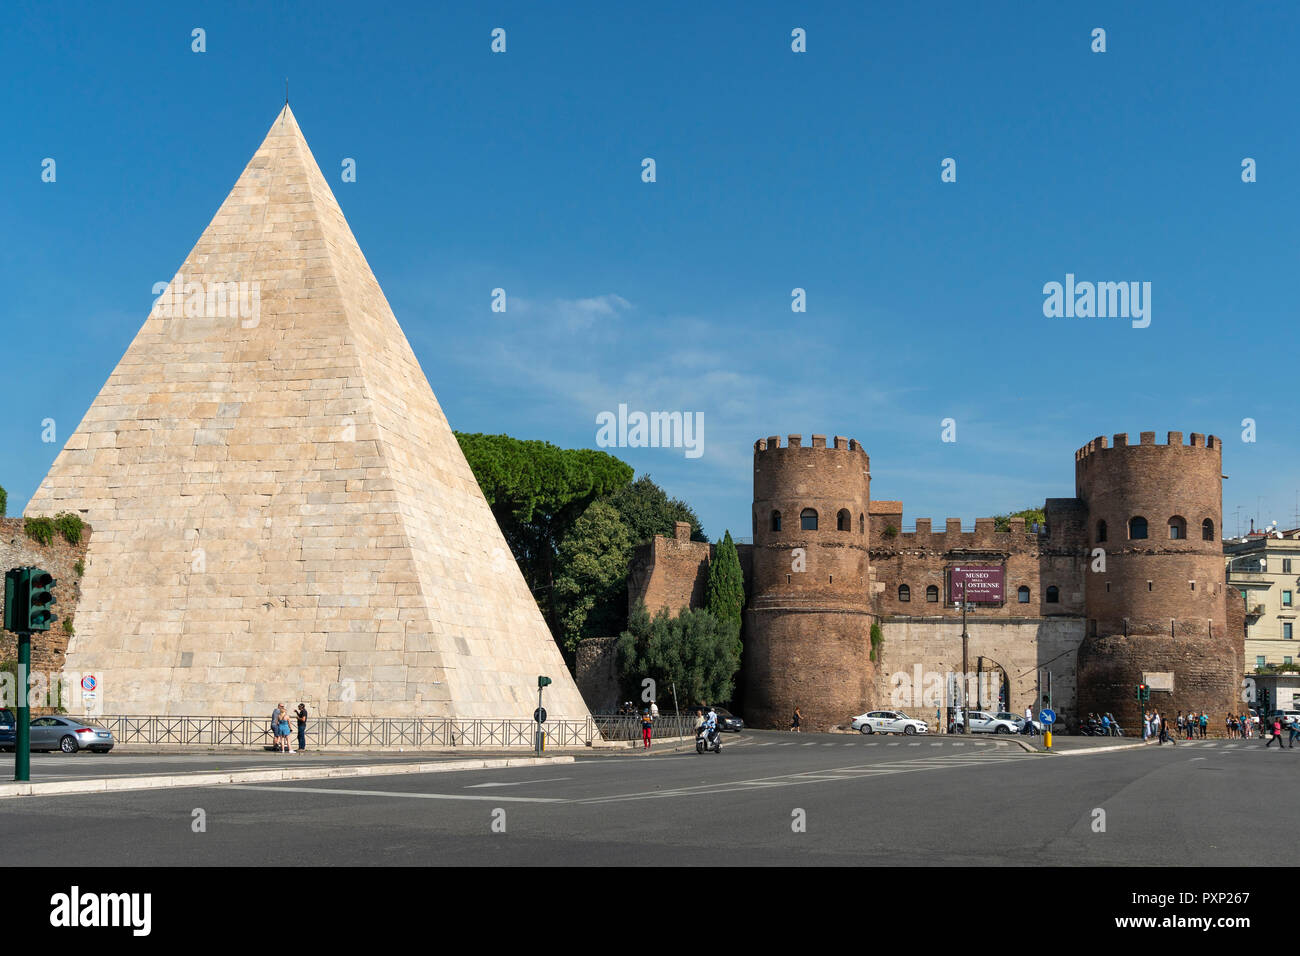 La Pyramide de Cestius et Porta San Paolo, l'une des portes du sud des Murs Auréliens, dans le quartier d'Ostiense, Rome, Italie. Banque D'Images